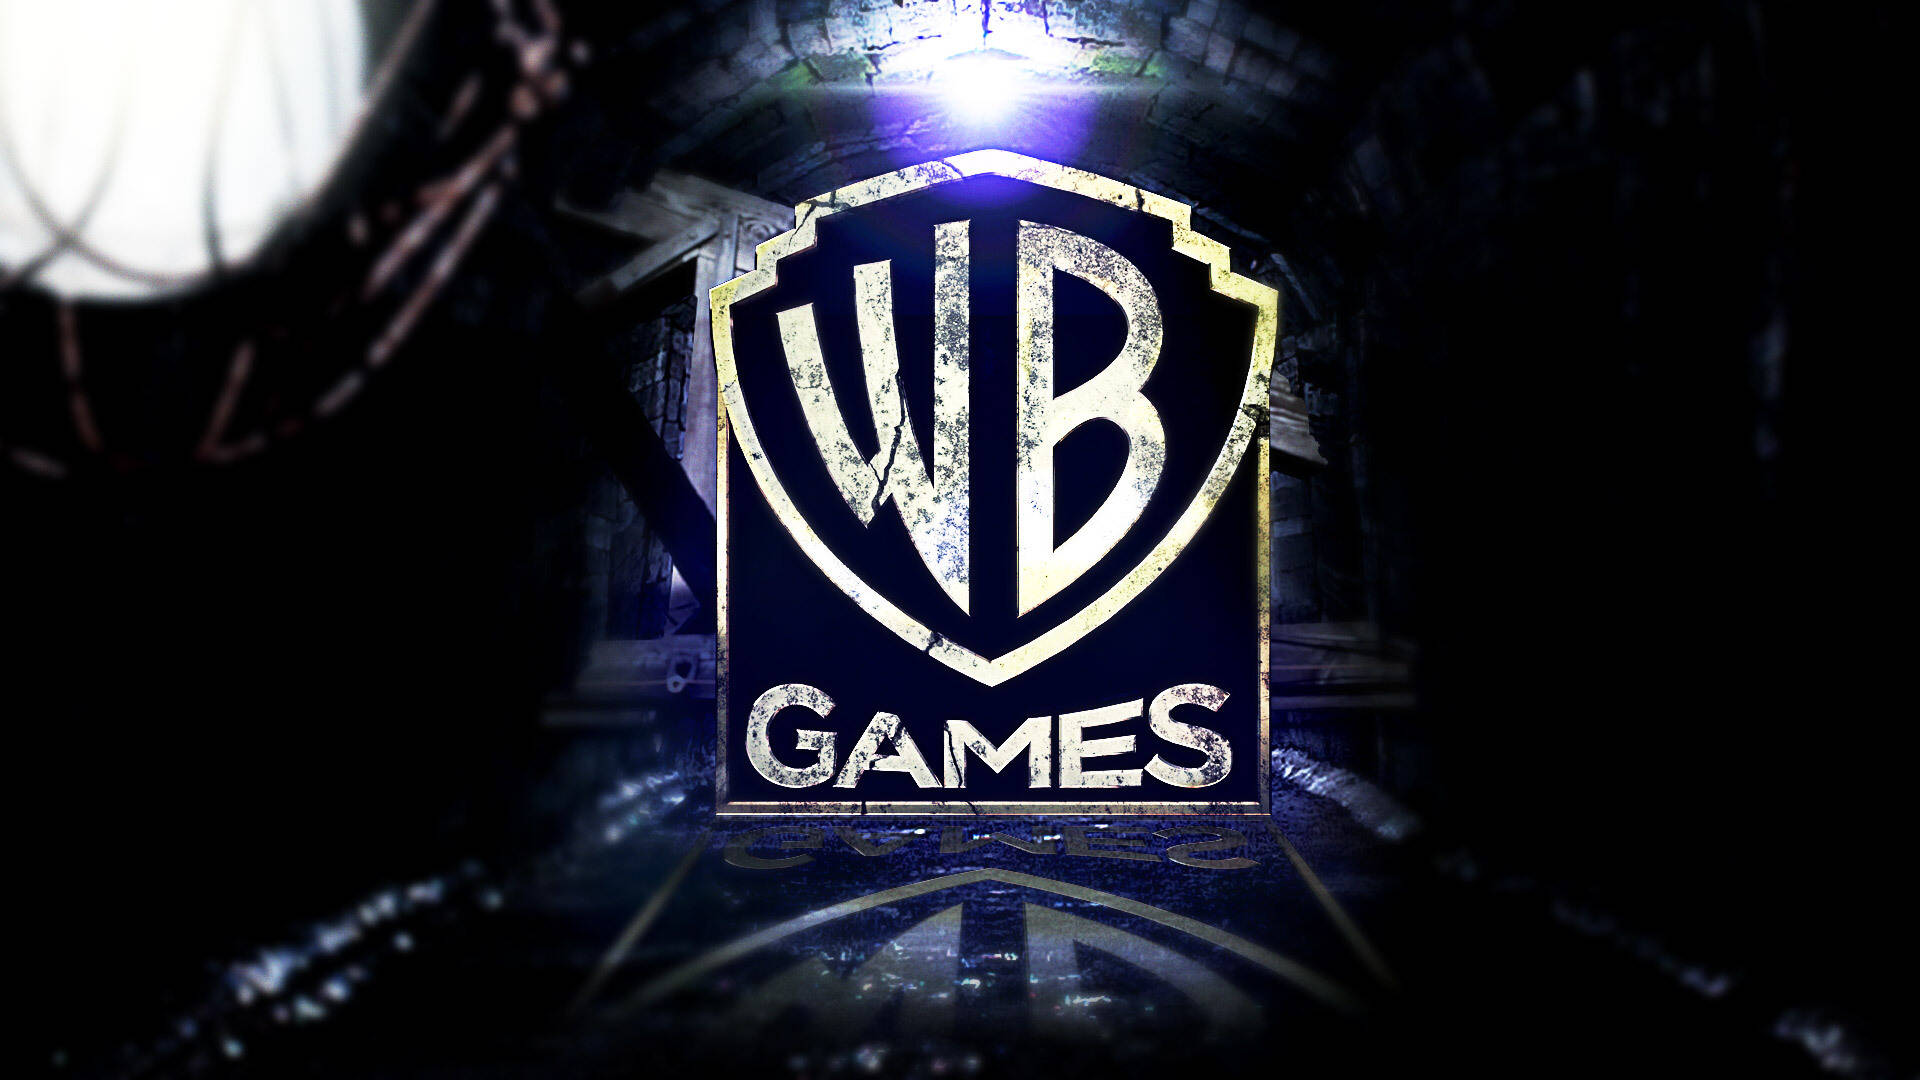 Warner Bros Games terá como foco o serviço online em seus próximos jogos